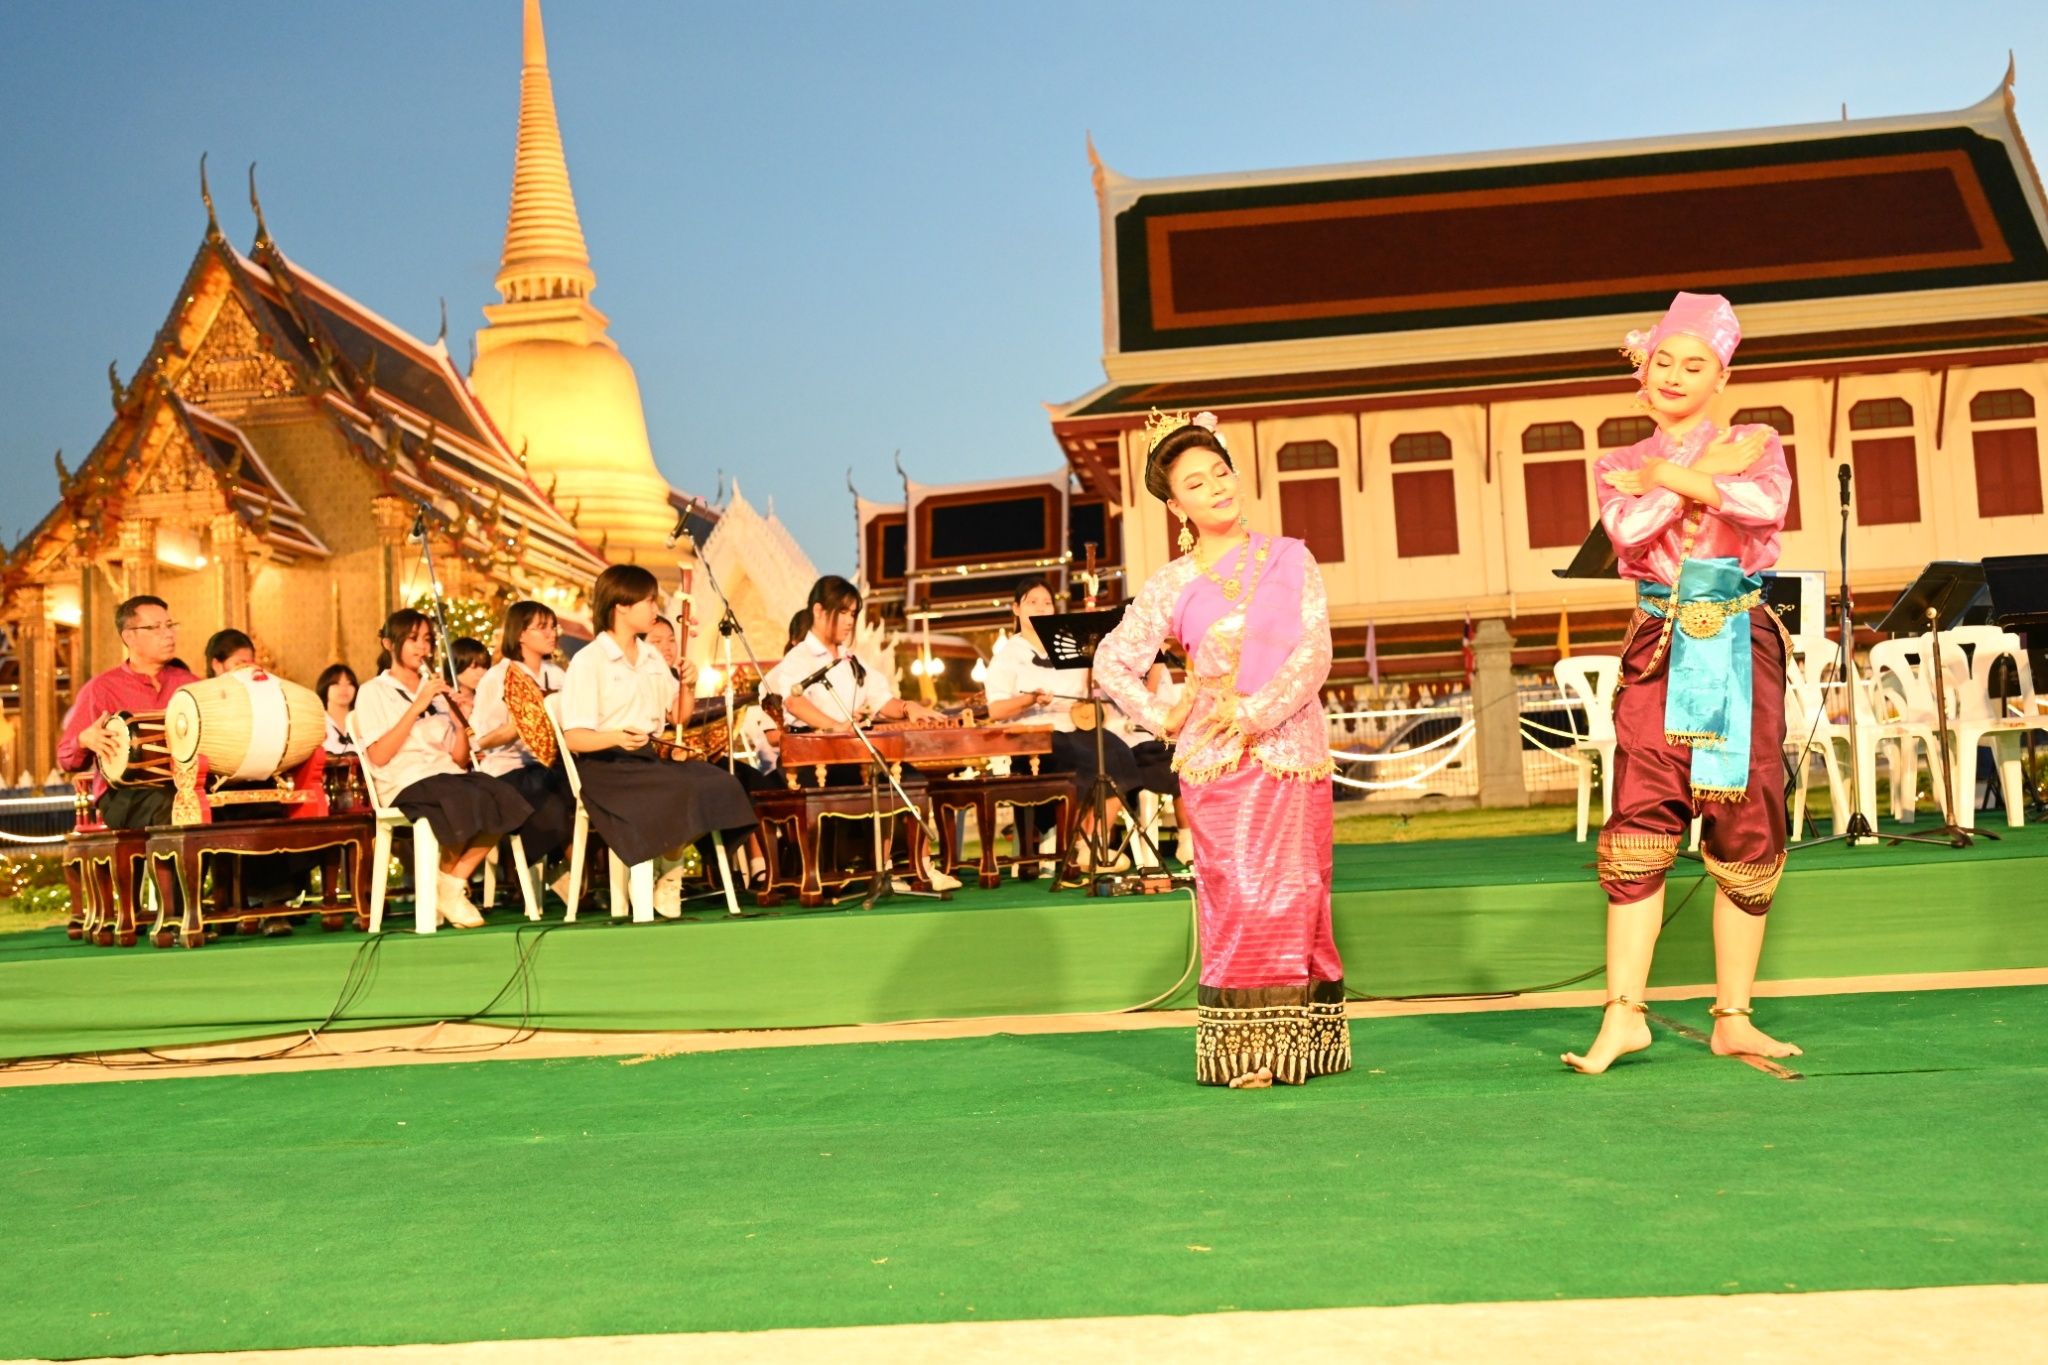 “มหาดไทยภิรมย์ ชมดนตรีในสวน” ครั้งที่ 2 โรงเรียนสตรีวัดระฆังโชว์ความสามารถด้านสุนทรียะ